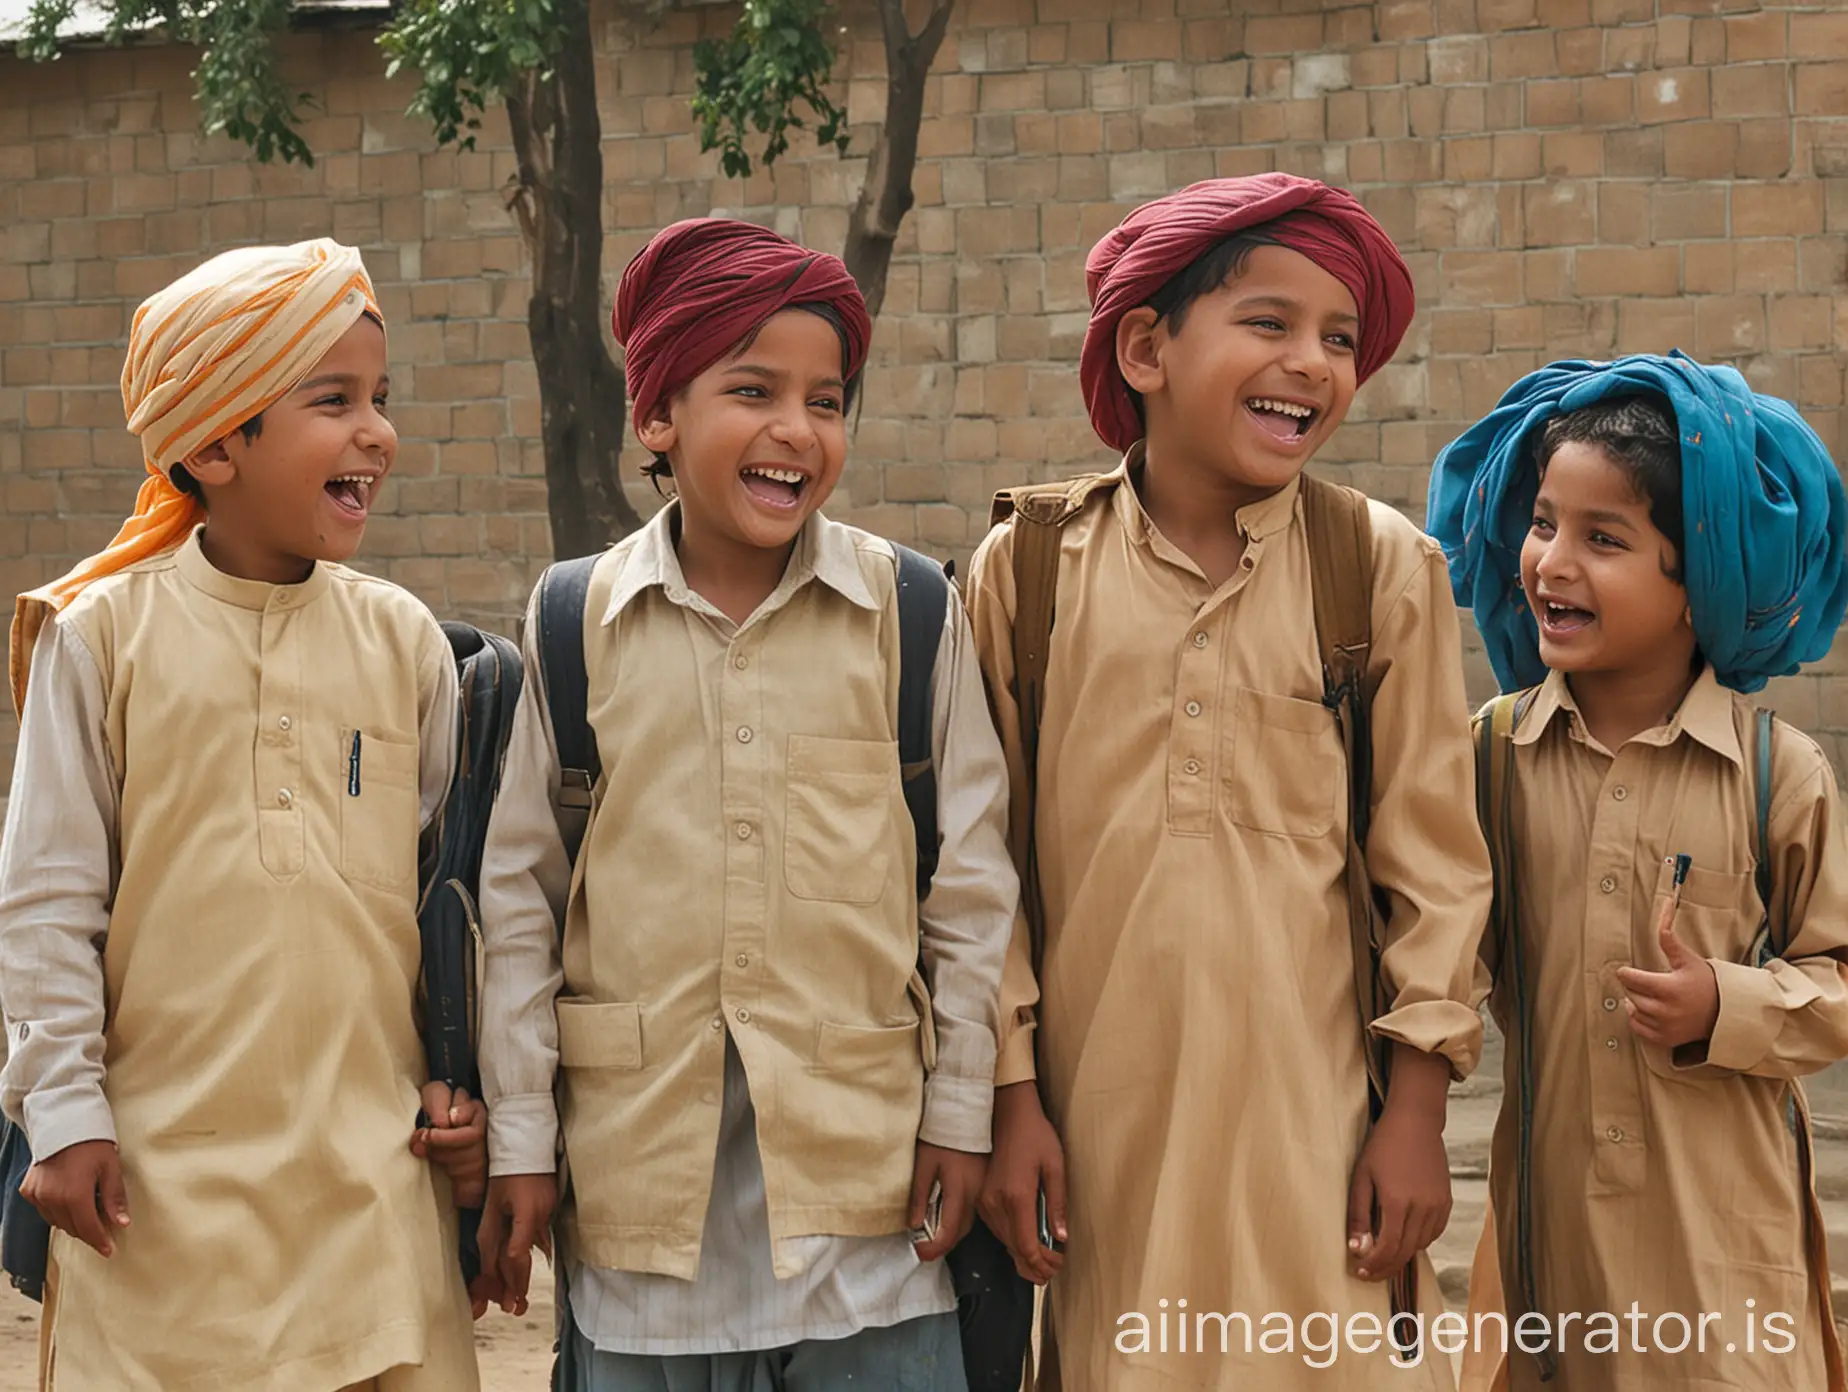 punjabi Children going to punjabi school in punjab, laughing and chatting]

